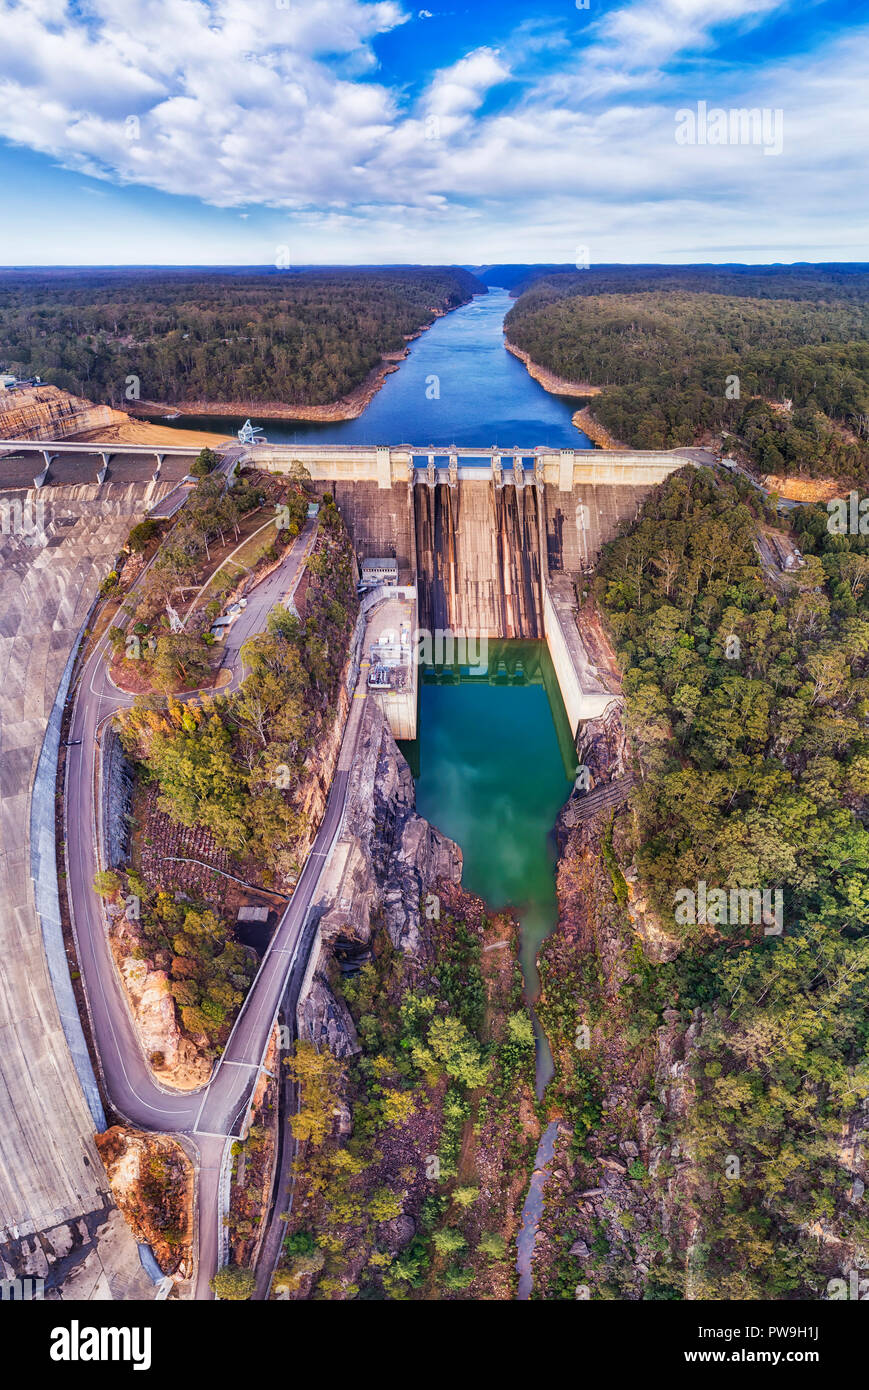 Massive konkrete Warraganba Damm auf Warragamba Fluss bilden Einzugsgebiet frisches Wasser zu Großraum Sydney zu liefern - Luftbild Panorama. Stockfoto